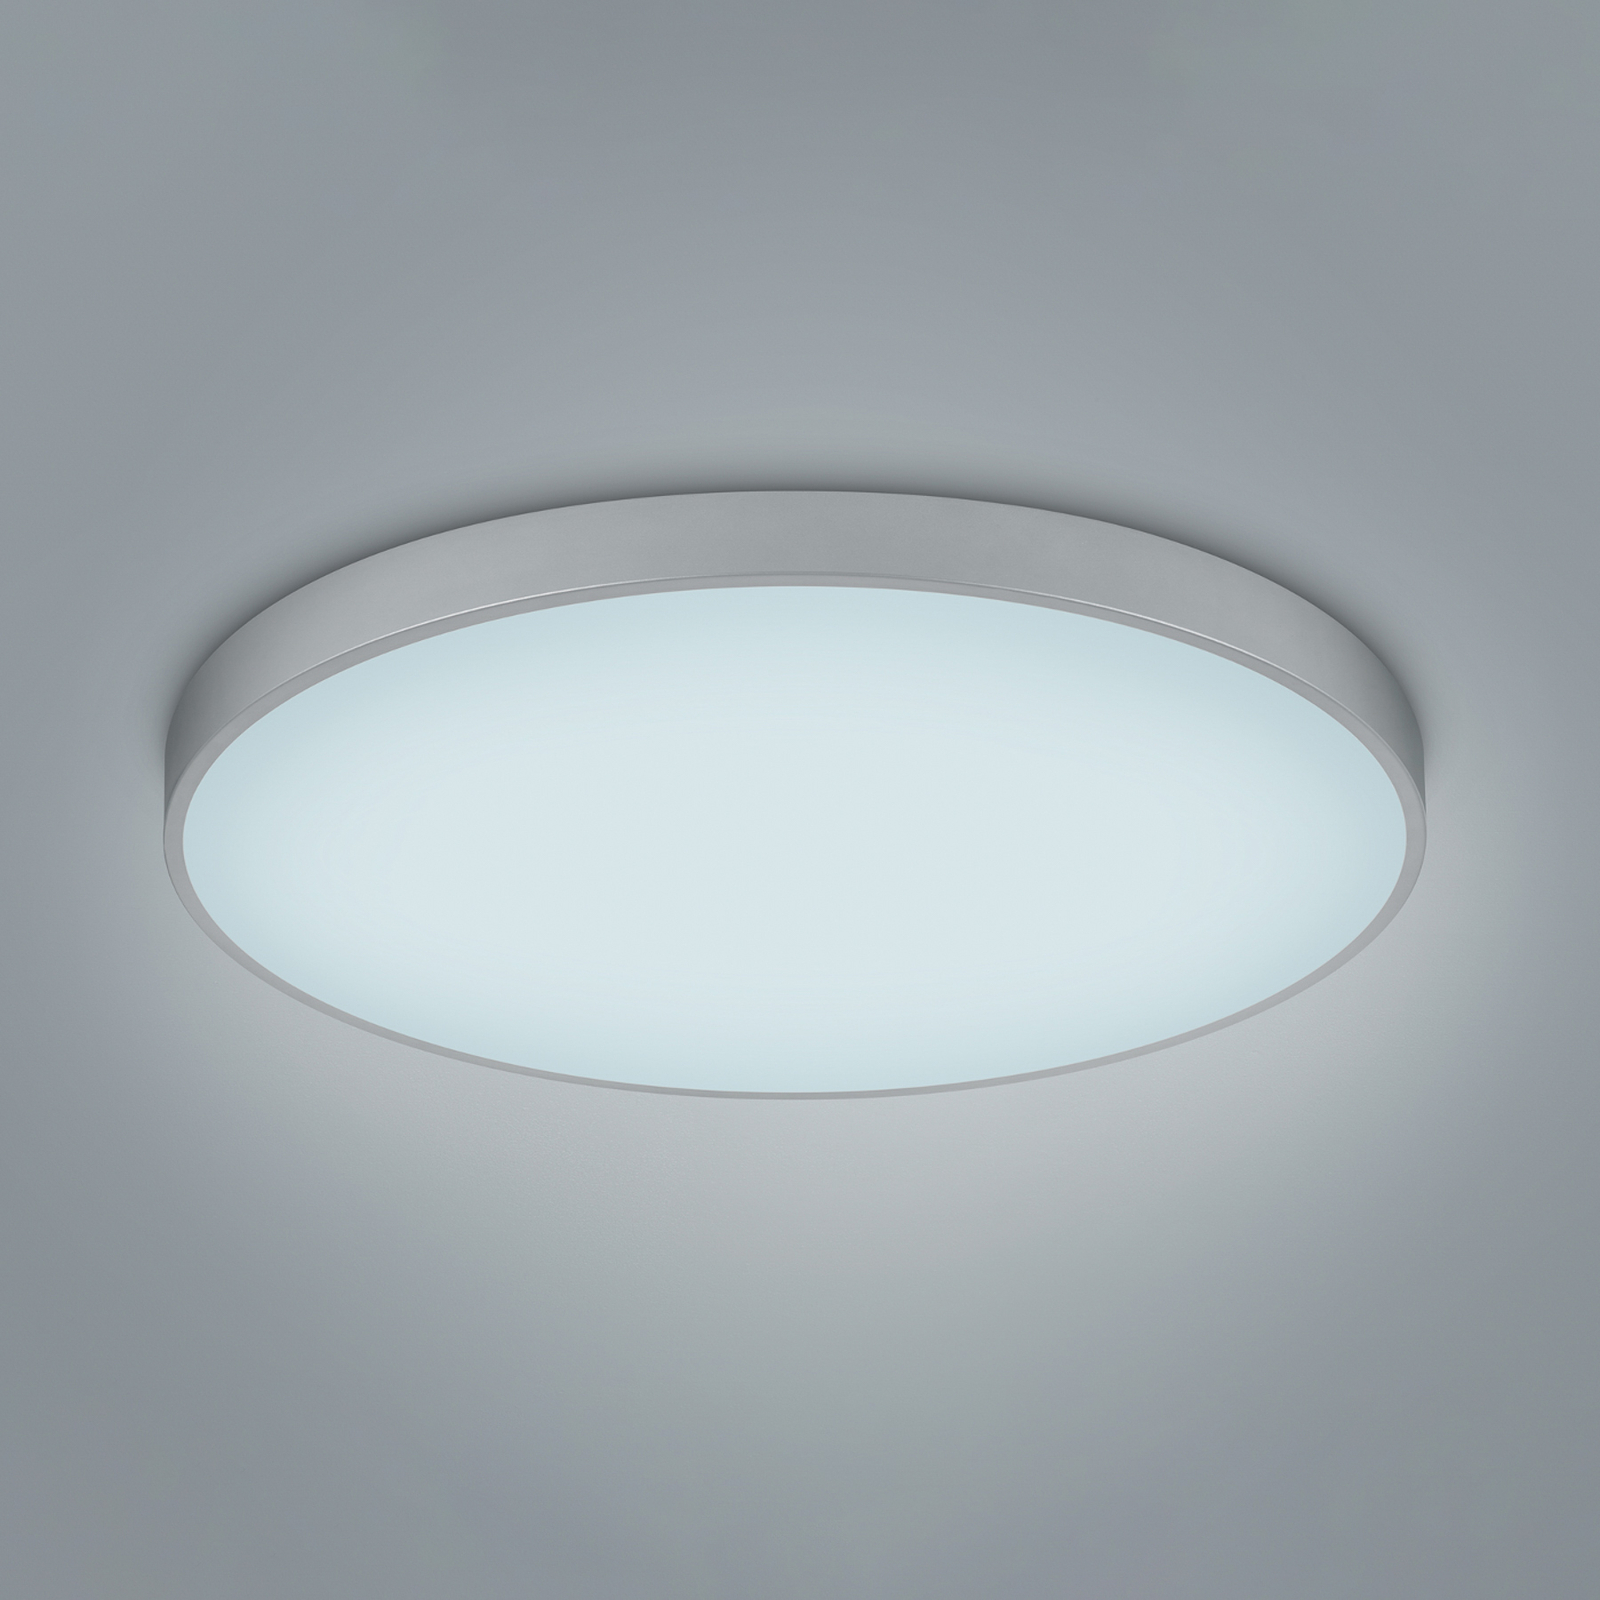 LED ceiling lamp Waco, CCT, Ø 75 cm, titanium